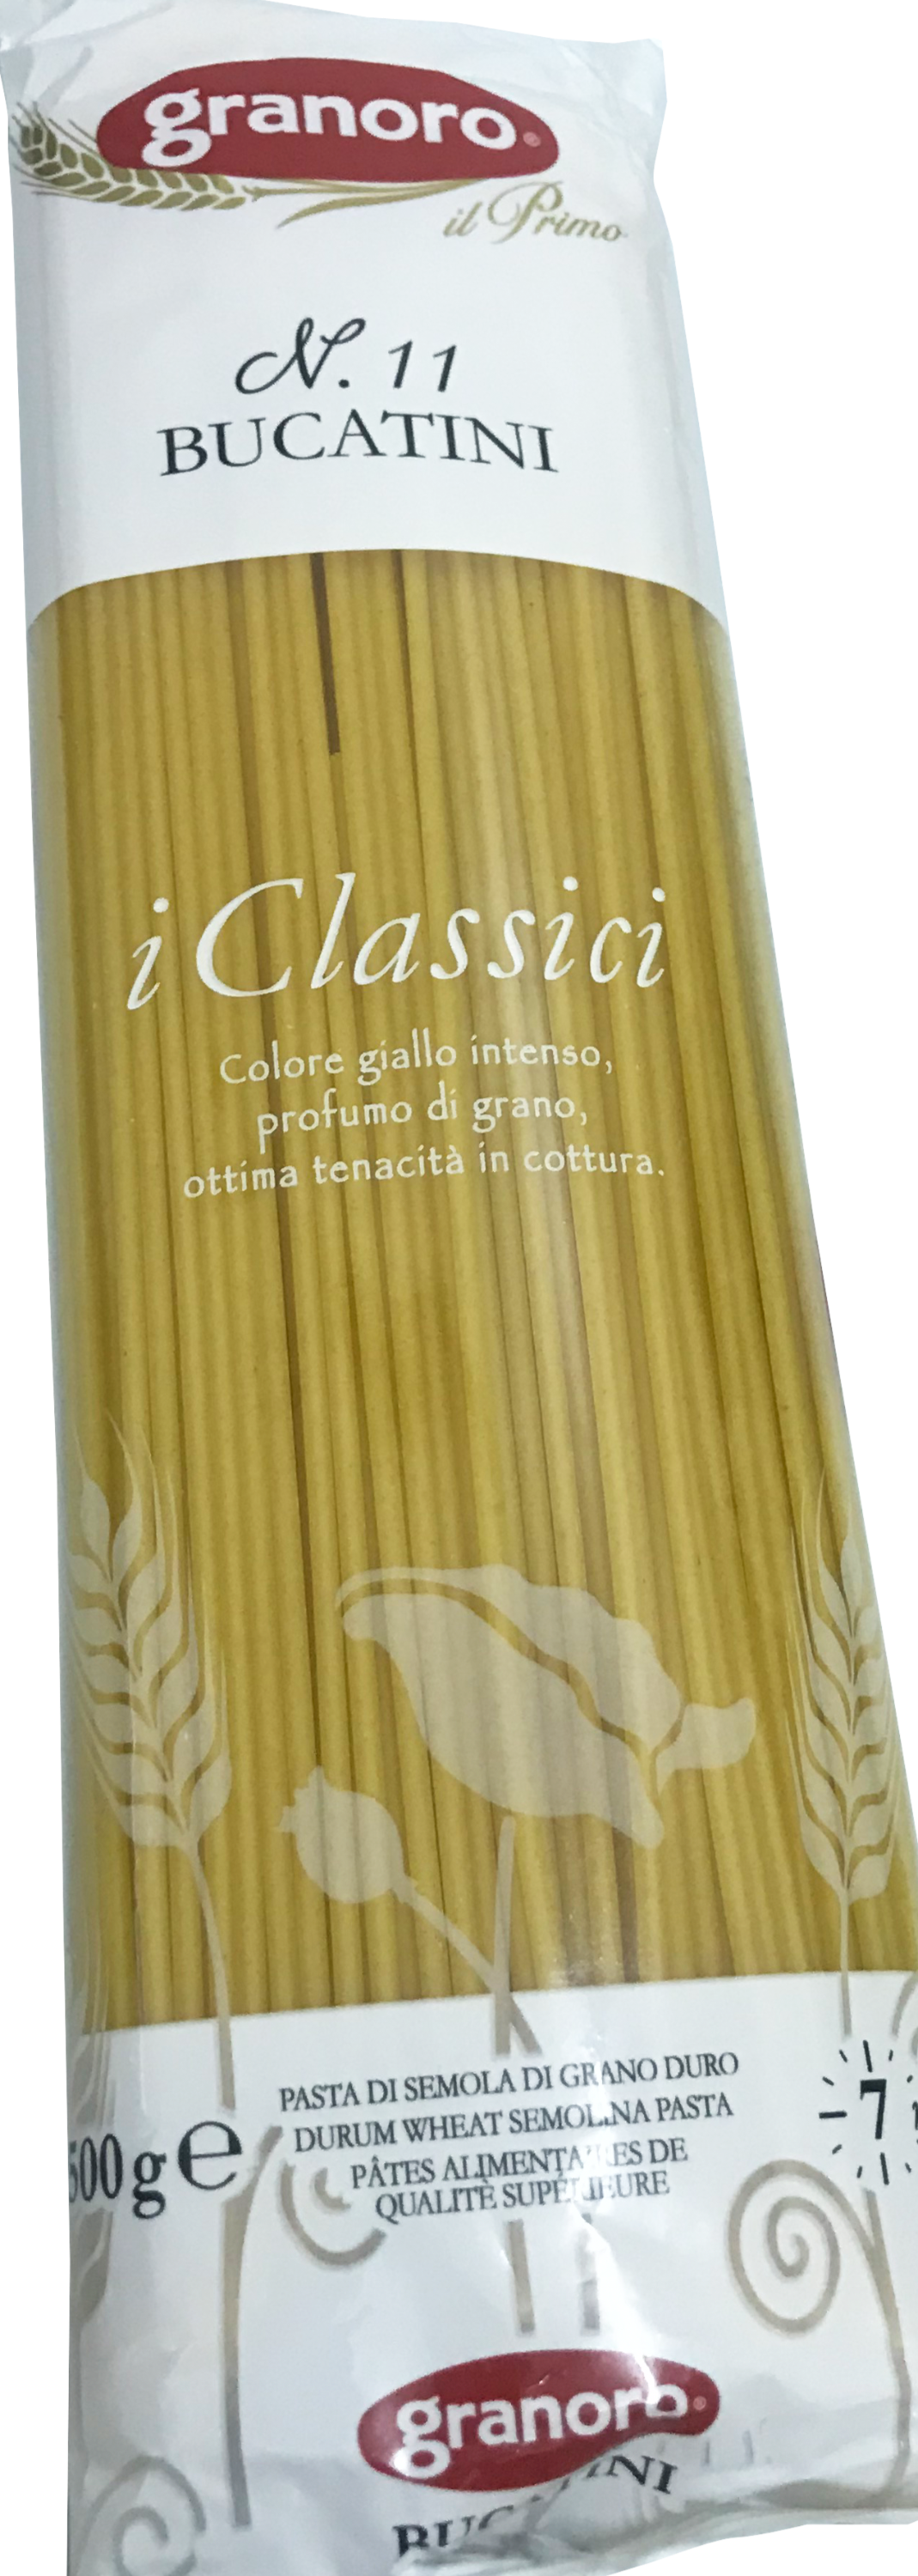 Bona Furtuna Bucatini Ancient Grain Pasta 500g Italy